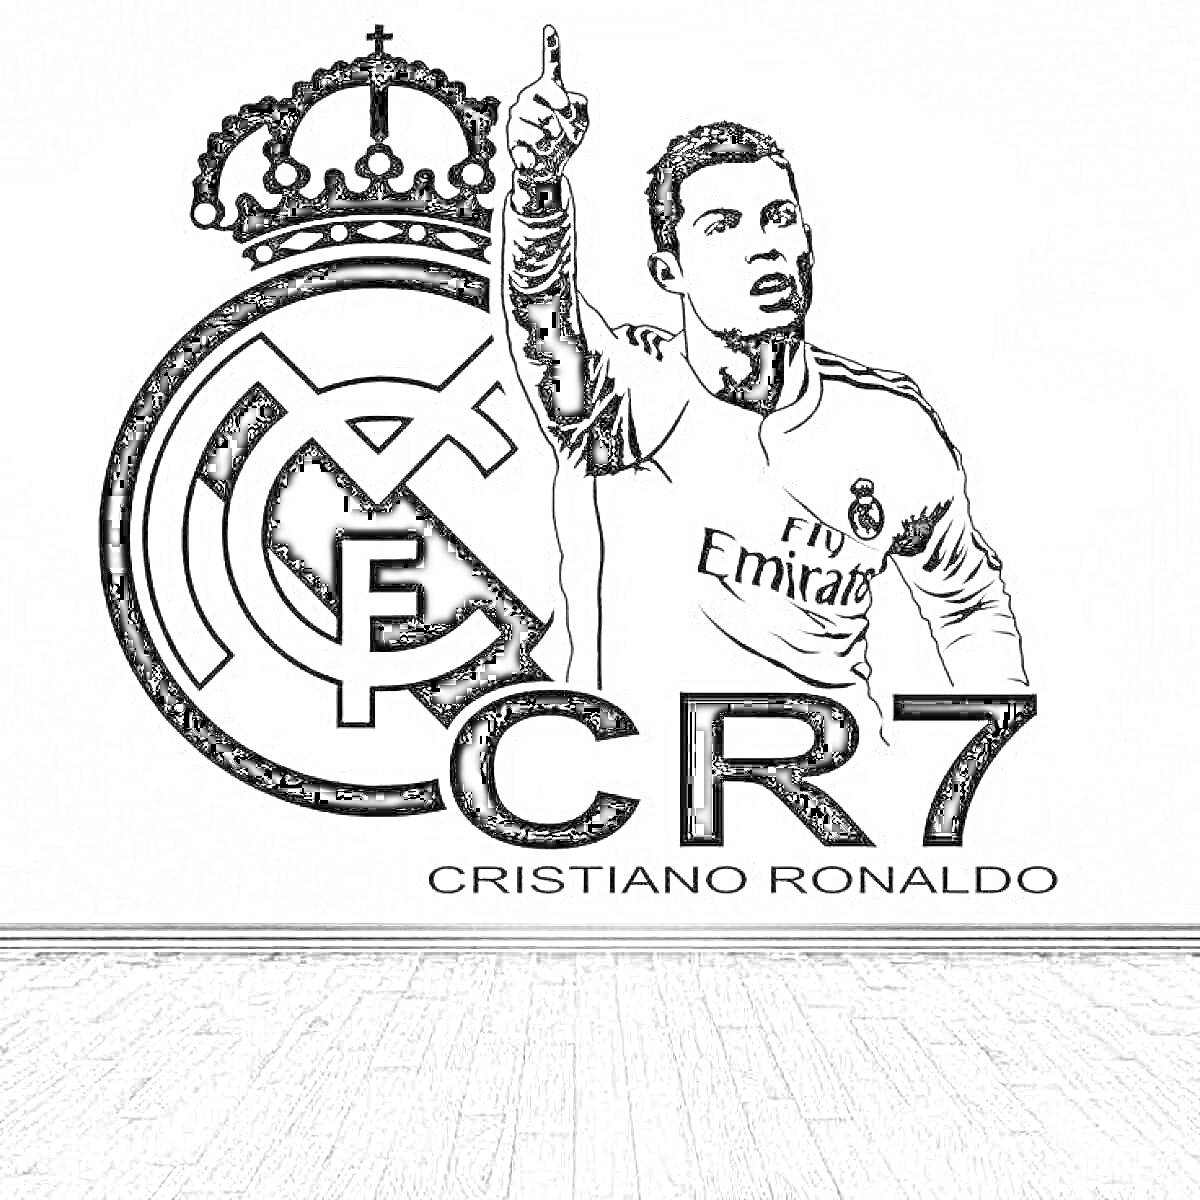 Кристиано Роналдо на фоне эмблемы футбольного клуба с надписями 